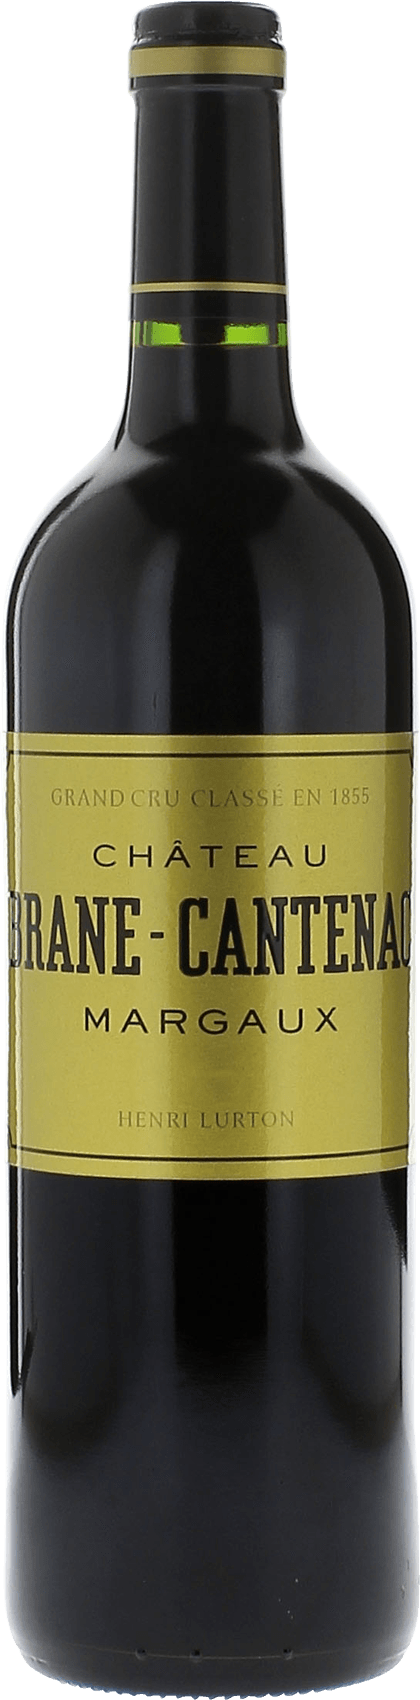 Brane cantenac 1994 2me Grand cru class Margaux, Bordeaux rouge